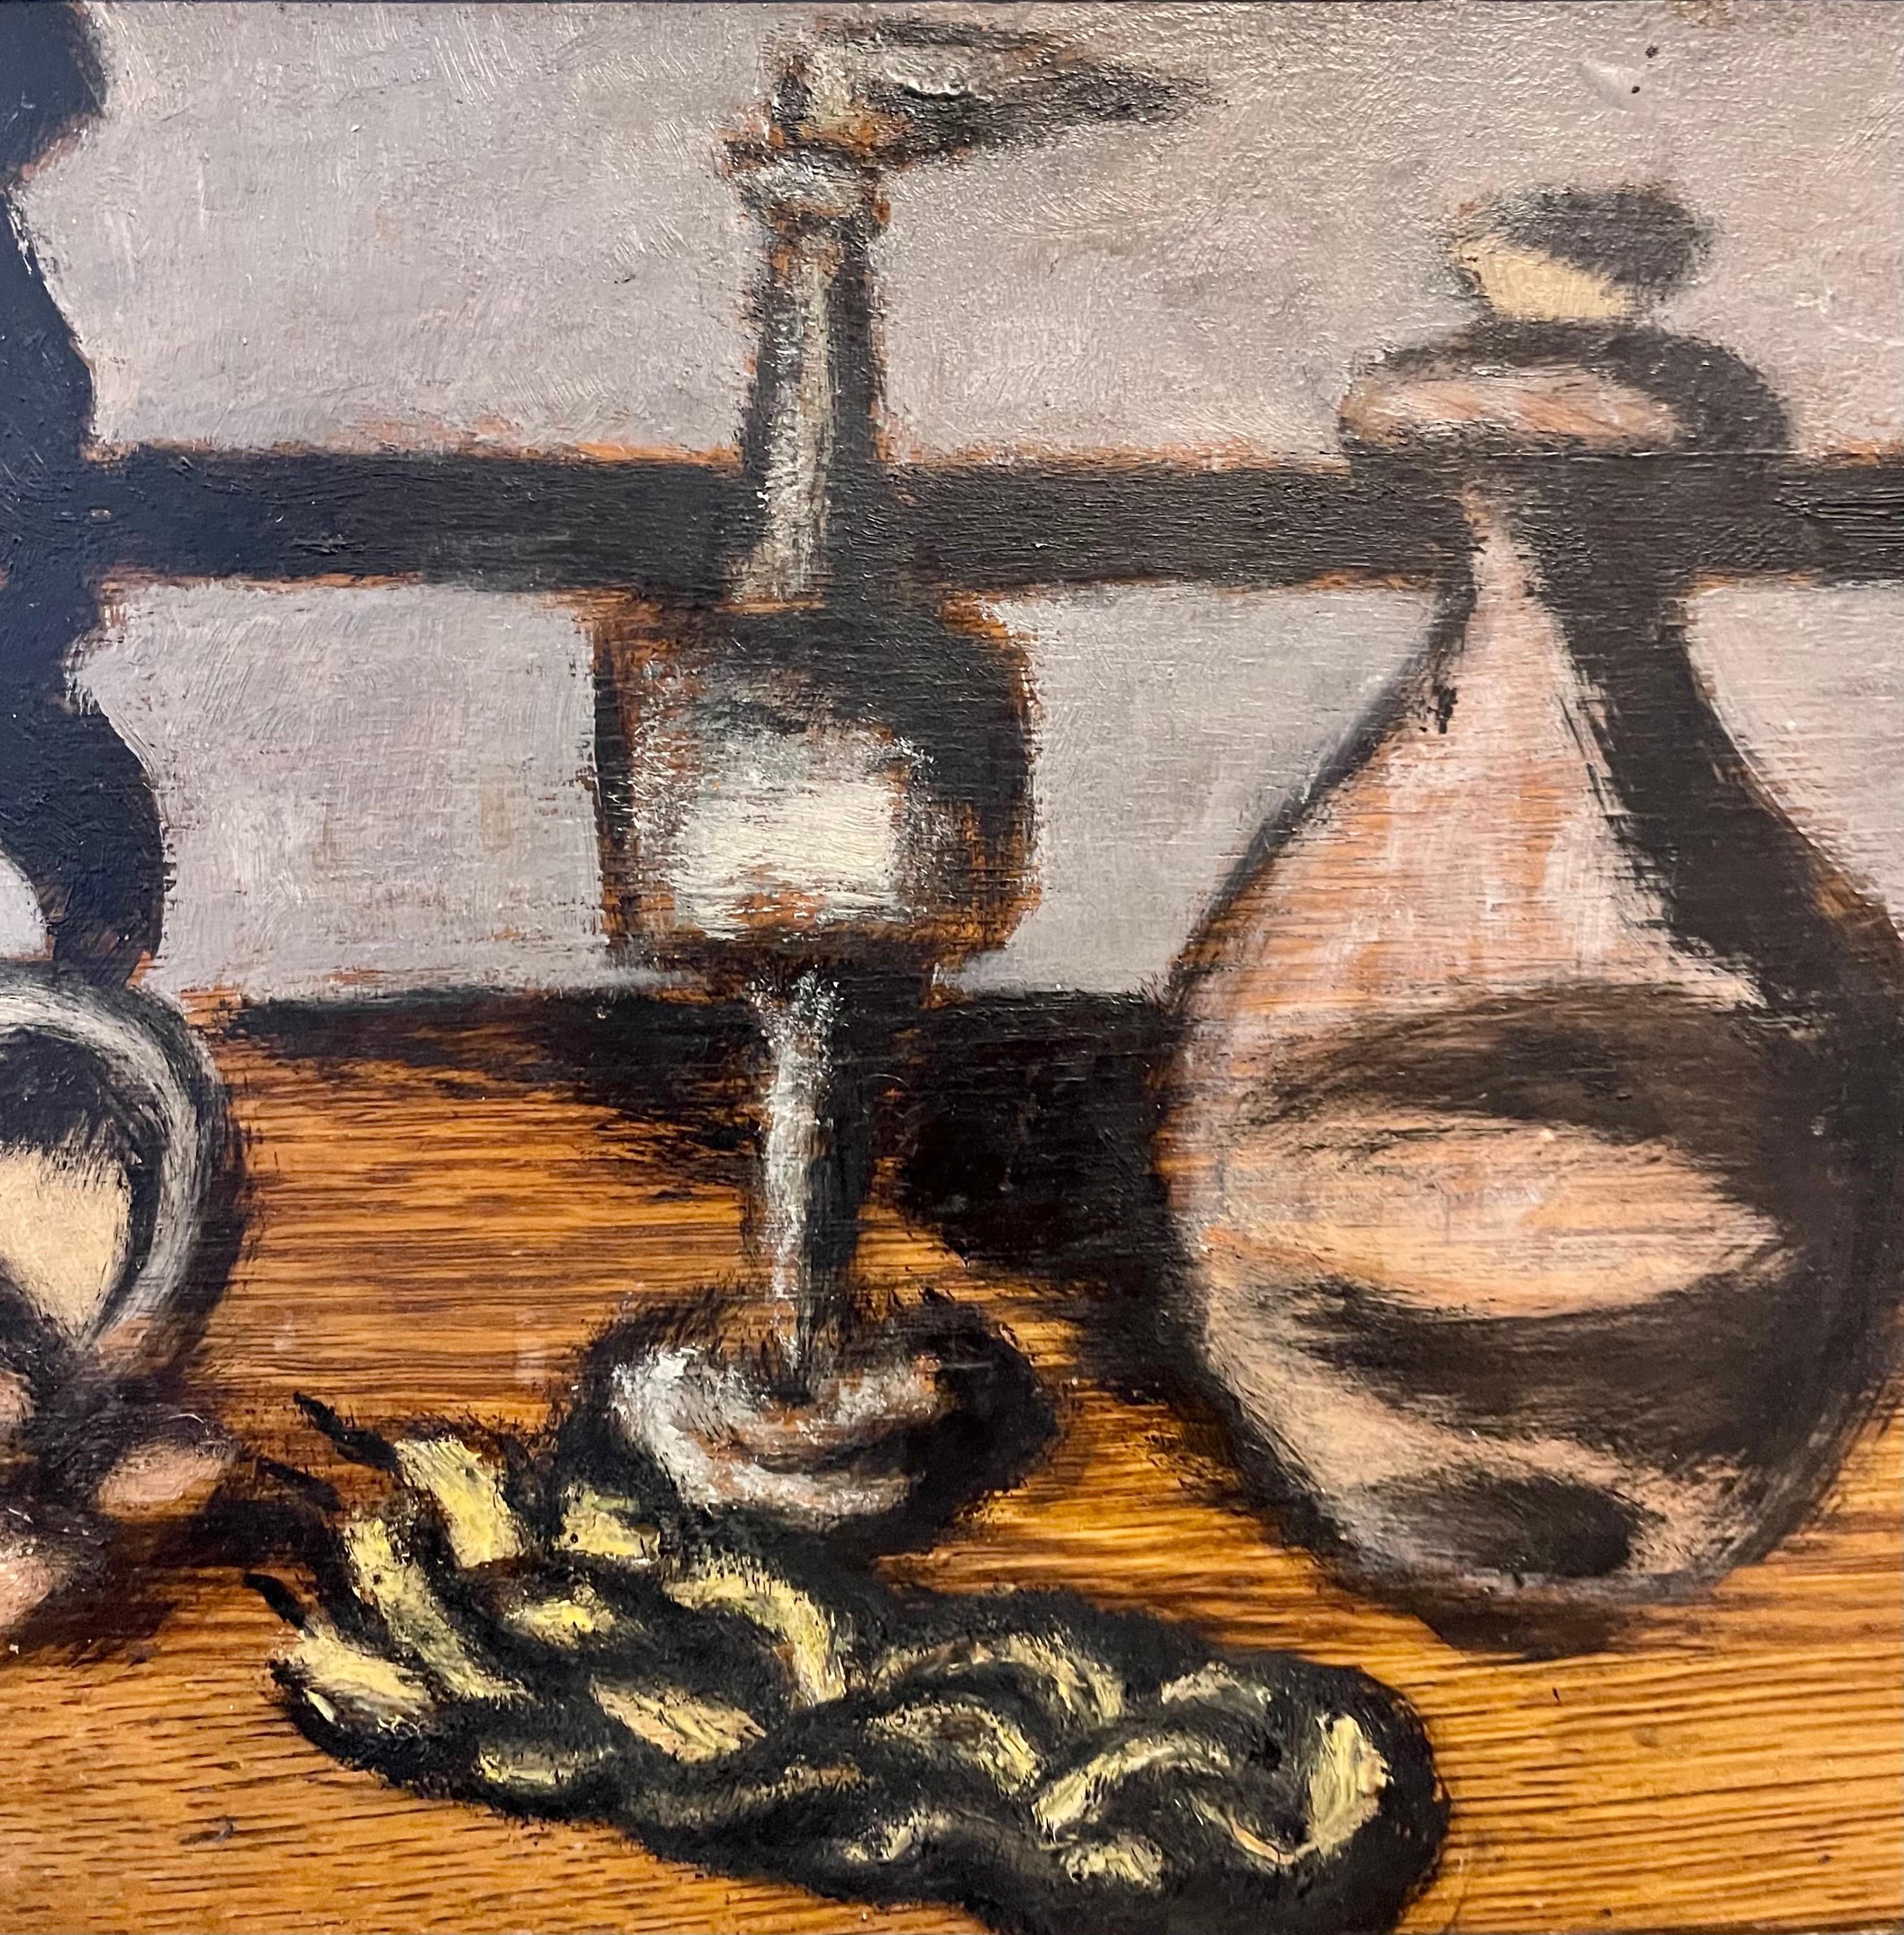 Peinture à l'huile d'une nature morte représentant une scène de Havdalah avec une bougie tressée, une boîte à épices et une coupe de kiddush.

Né en 1897, Ben-Zion a célébré son héritage juif européen dans ses œuvres visuelles en tant que sculpteur,